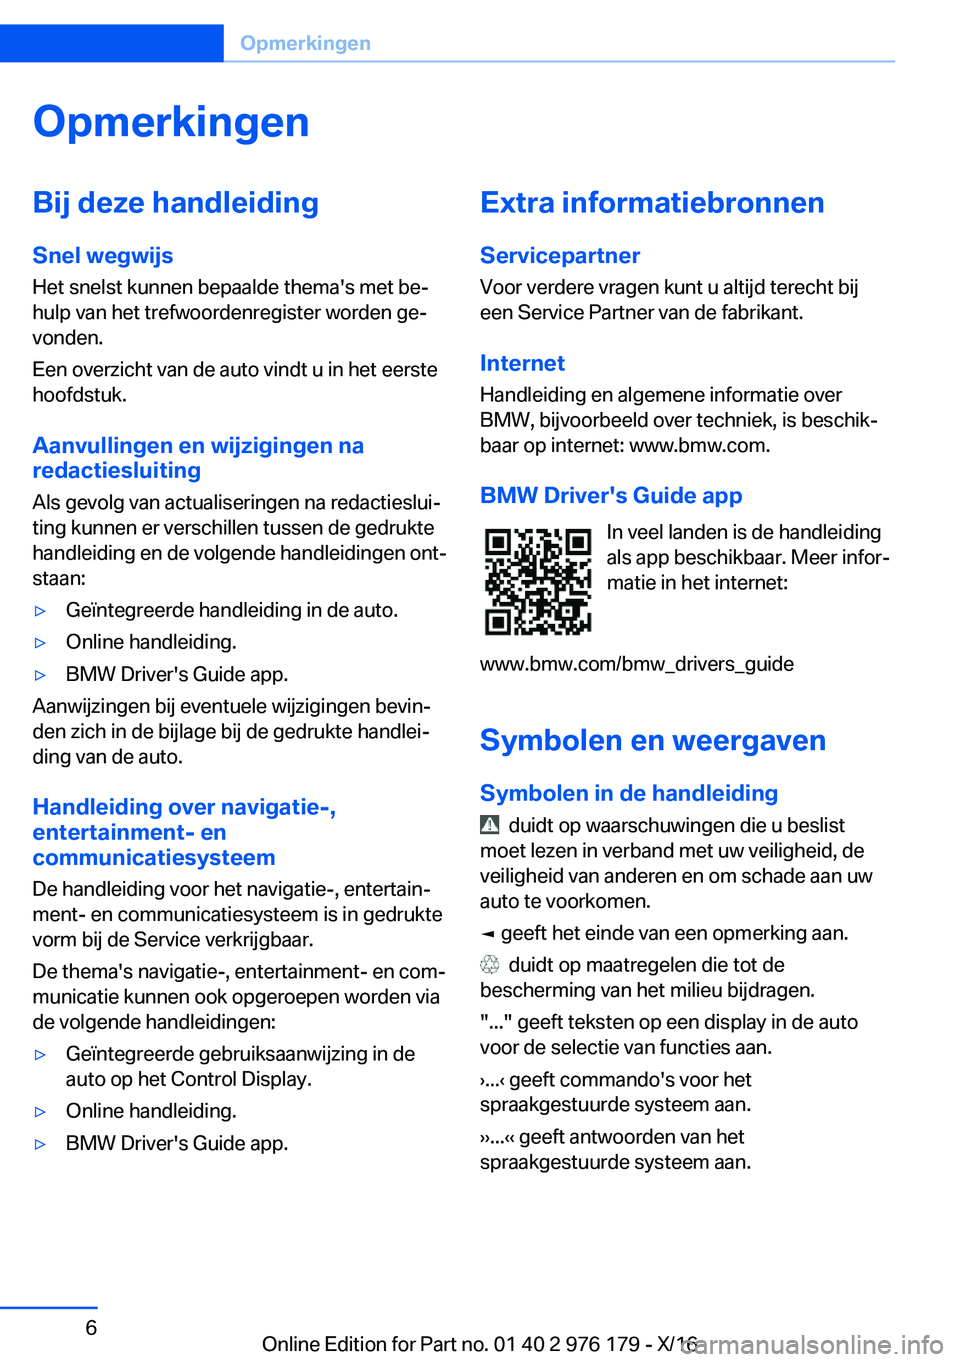 BMW X5 M 2017  Instructieboekjes (in Dutch) �O�p�m�e�r�k�i�n�g�e�n�B�i�j��d�e�z�e��h�a�n�d�l�e�i�d�i�n�g�S�n�e�l��w�e�g�w�i�j�s
�H�e�t� �s�n�e�l�s�t� �k�u�n�n�e�n� �b�e�p�a�a�l�d�e� �t�h�e�m�a�'�s� �m�e�t� �b�ej
�h�u�l�p� �v�a�n� �h�e�t